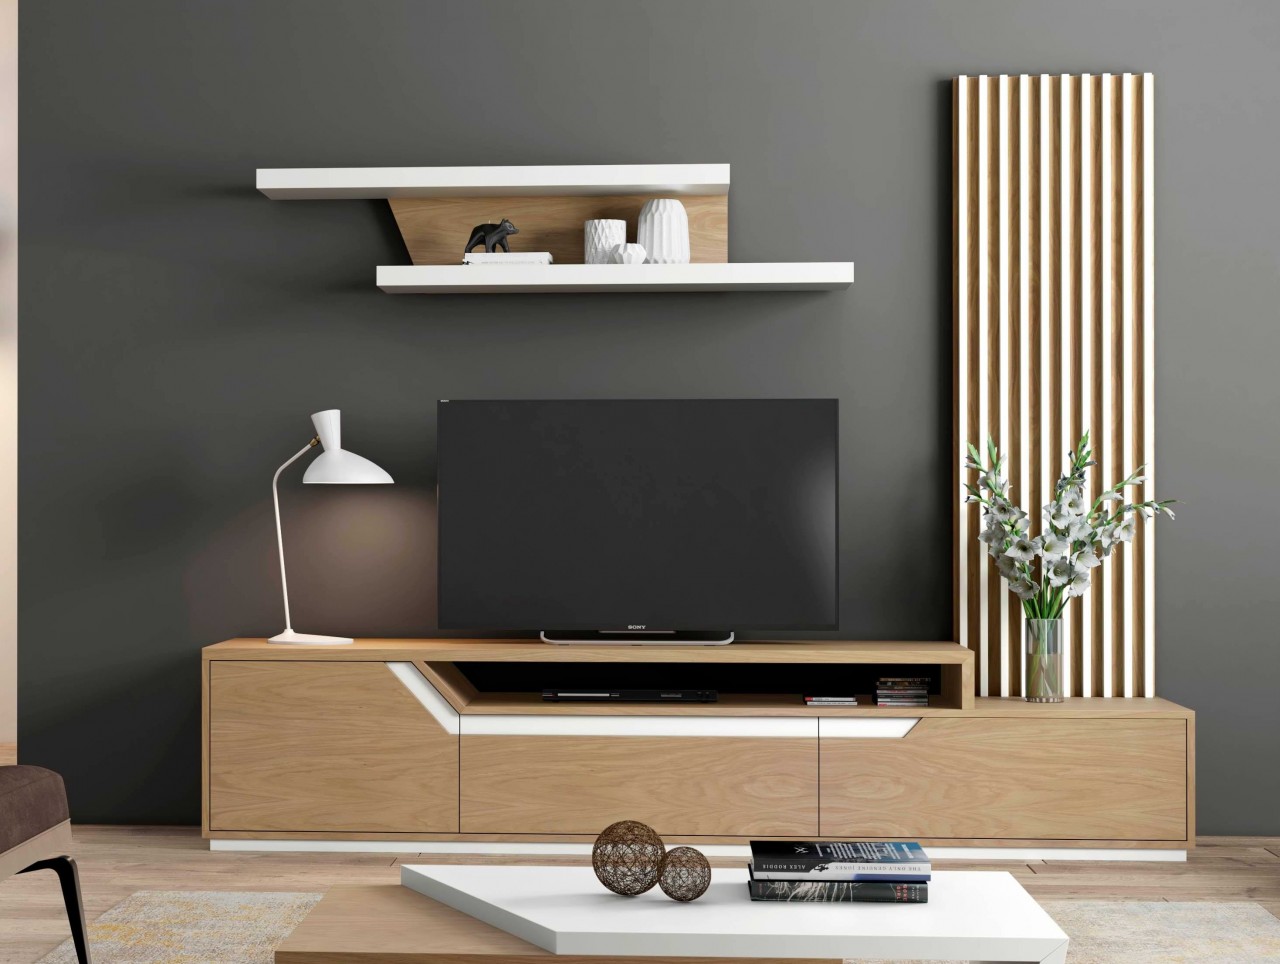 Organize a sua sala da melhor forma com a estante TV Luca. Seu design moderno e sofisticado fará toda a diferença.